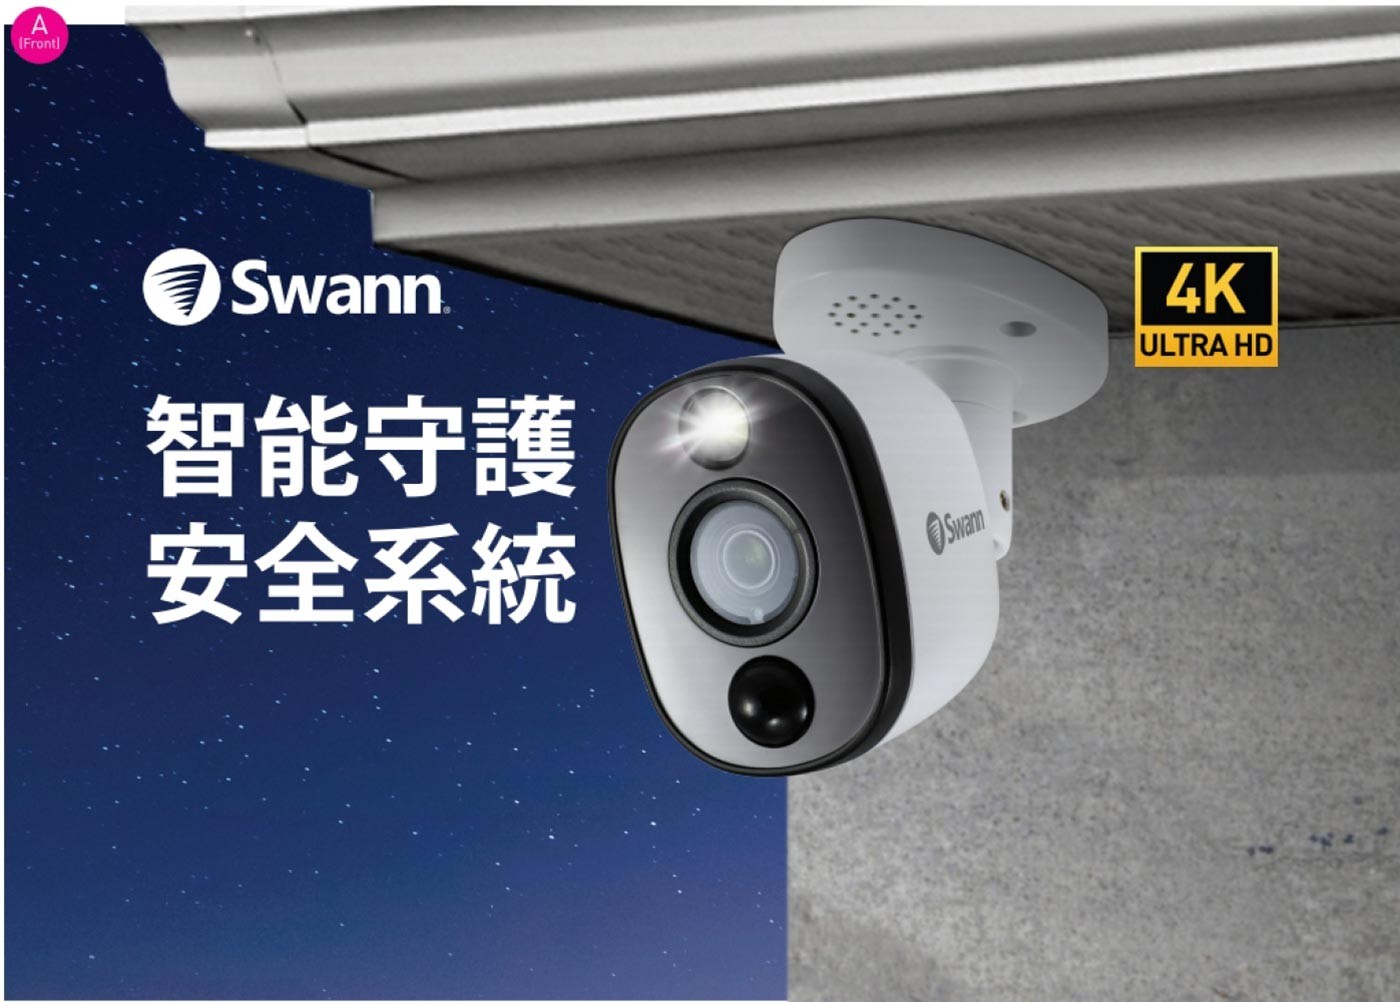 Swann 8支八百萬畫素攝影機 + 4TB 八路 DVR 監控主機組4K 800 萬畫素高清解析度，夜間彩色最遠可達 10M，黑白視覺清晰度為 40M，4TB 大容量儲存空間，防水等級 IP66/90 度廣角，攝像機有內置警報，攝像機內置 LED SPOT LIGHT，一年保固 / 支援 DROPBOX。